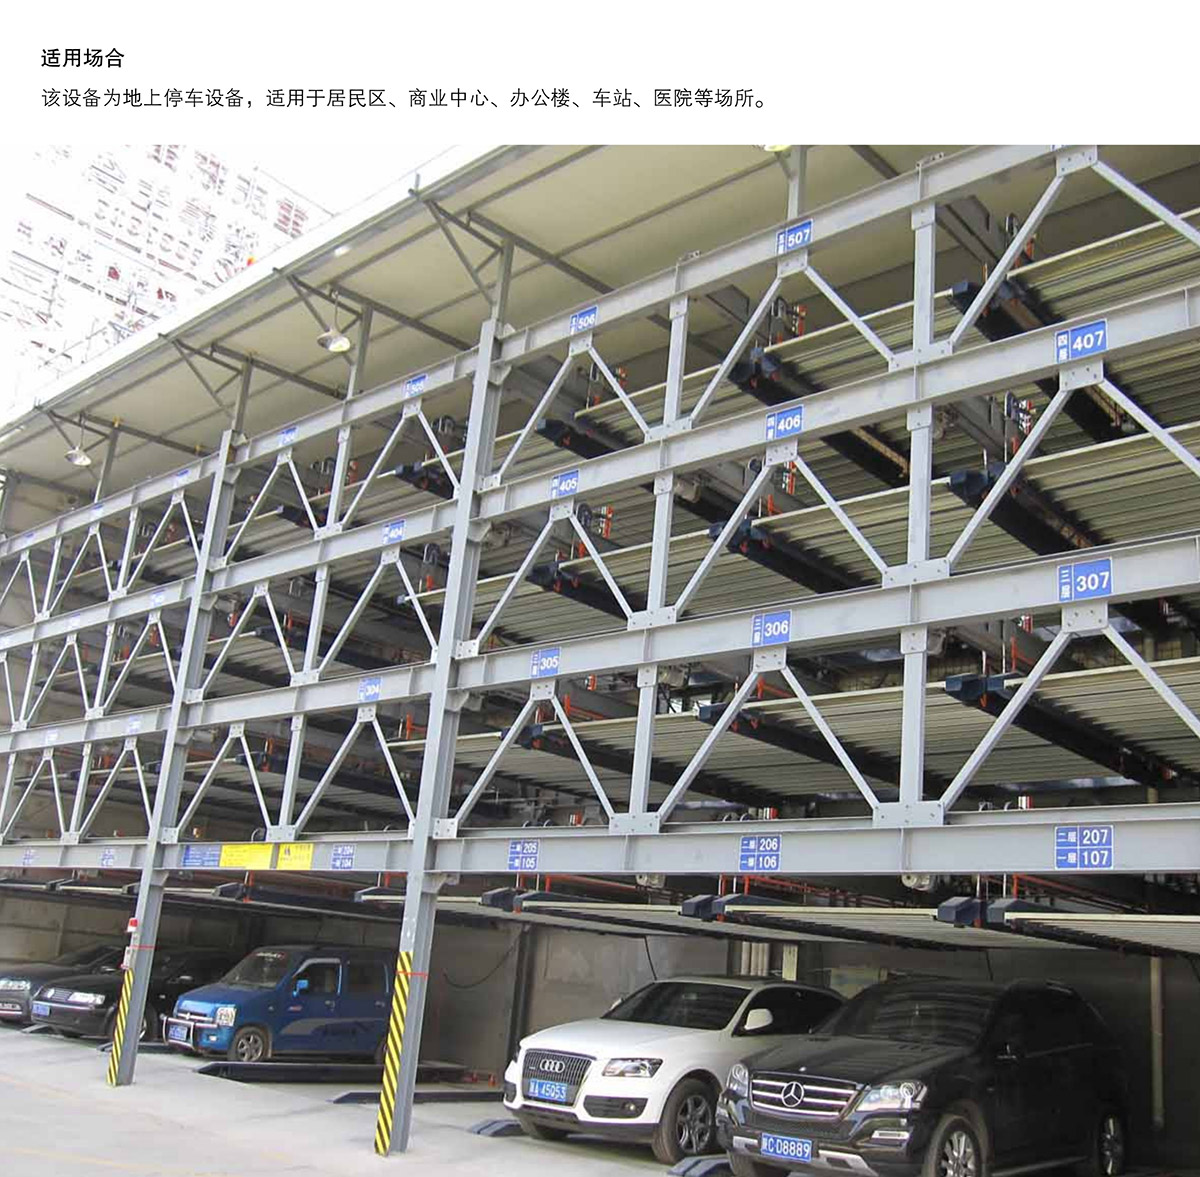 自动停车09四至六层PSH4-6升降横移机械立体停车适用场合.jpg